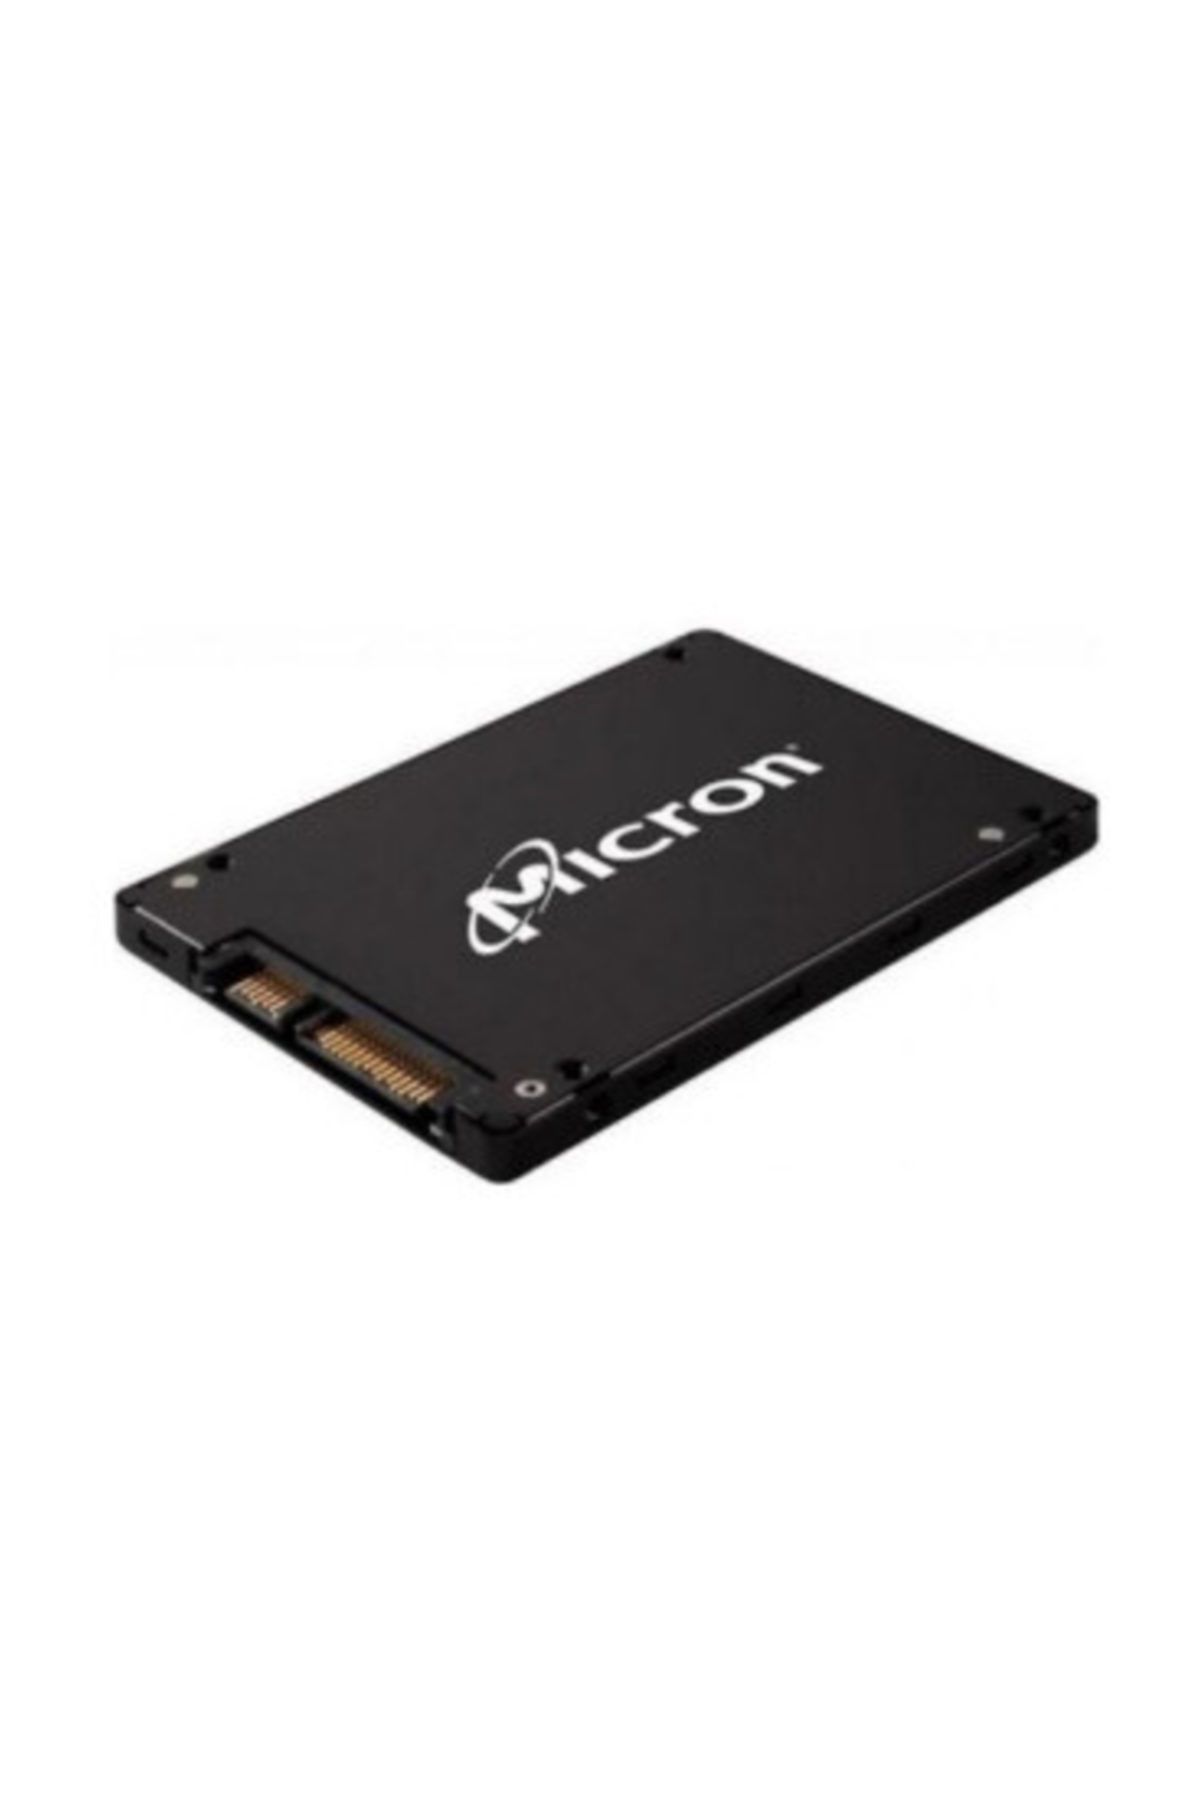 Micron 1100 2TB SATA 2.5' Non SED Client SSD Disk